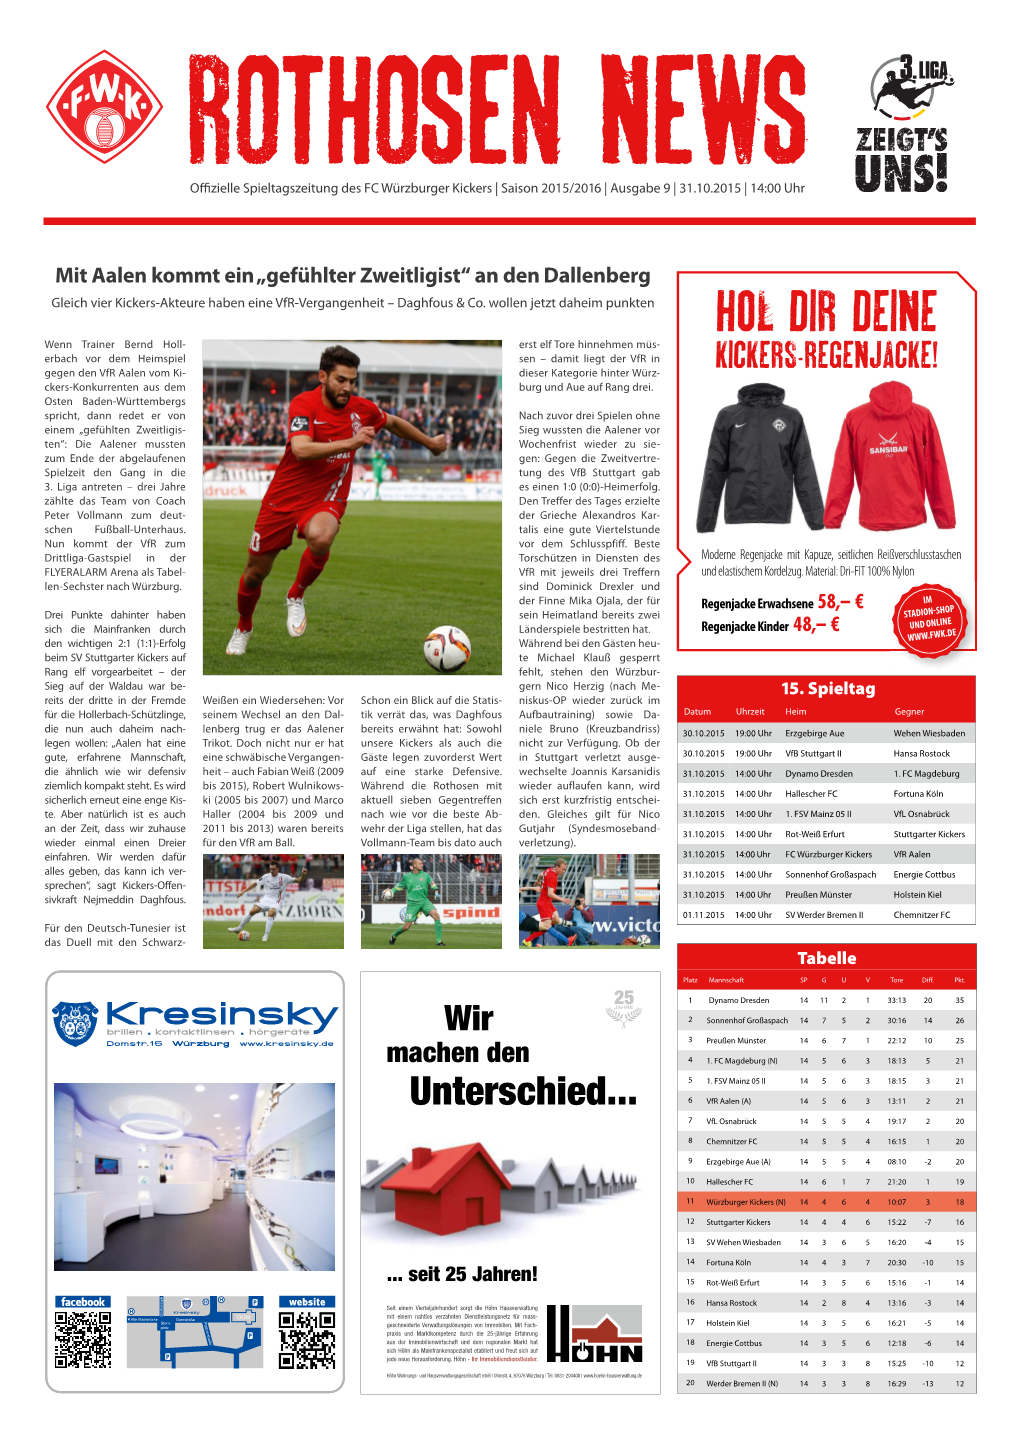 Rothosen News Ausgabe 9 / Saison 2015/16 / 3